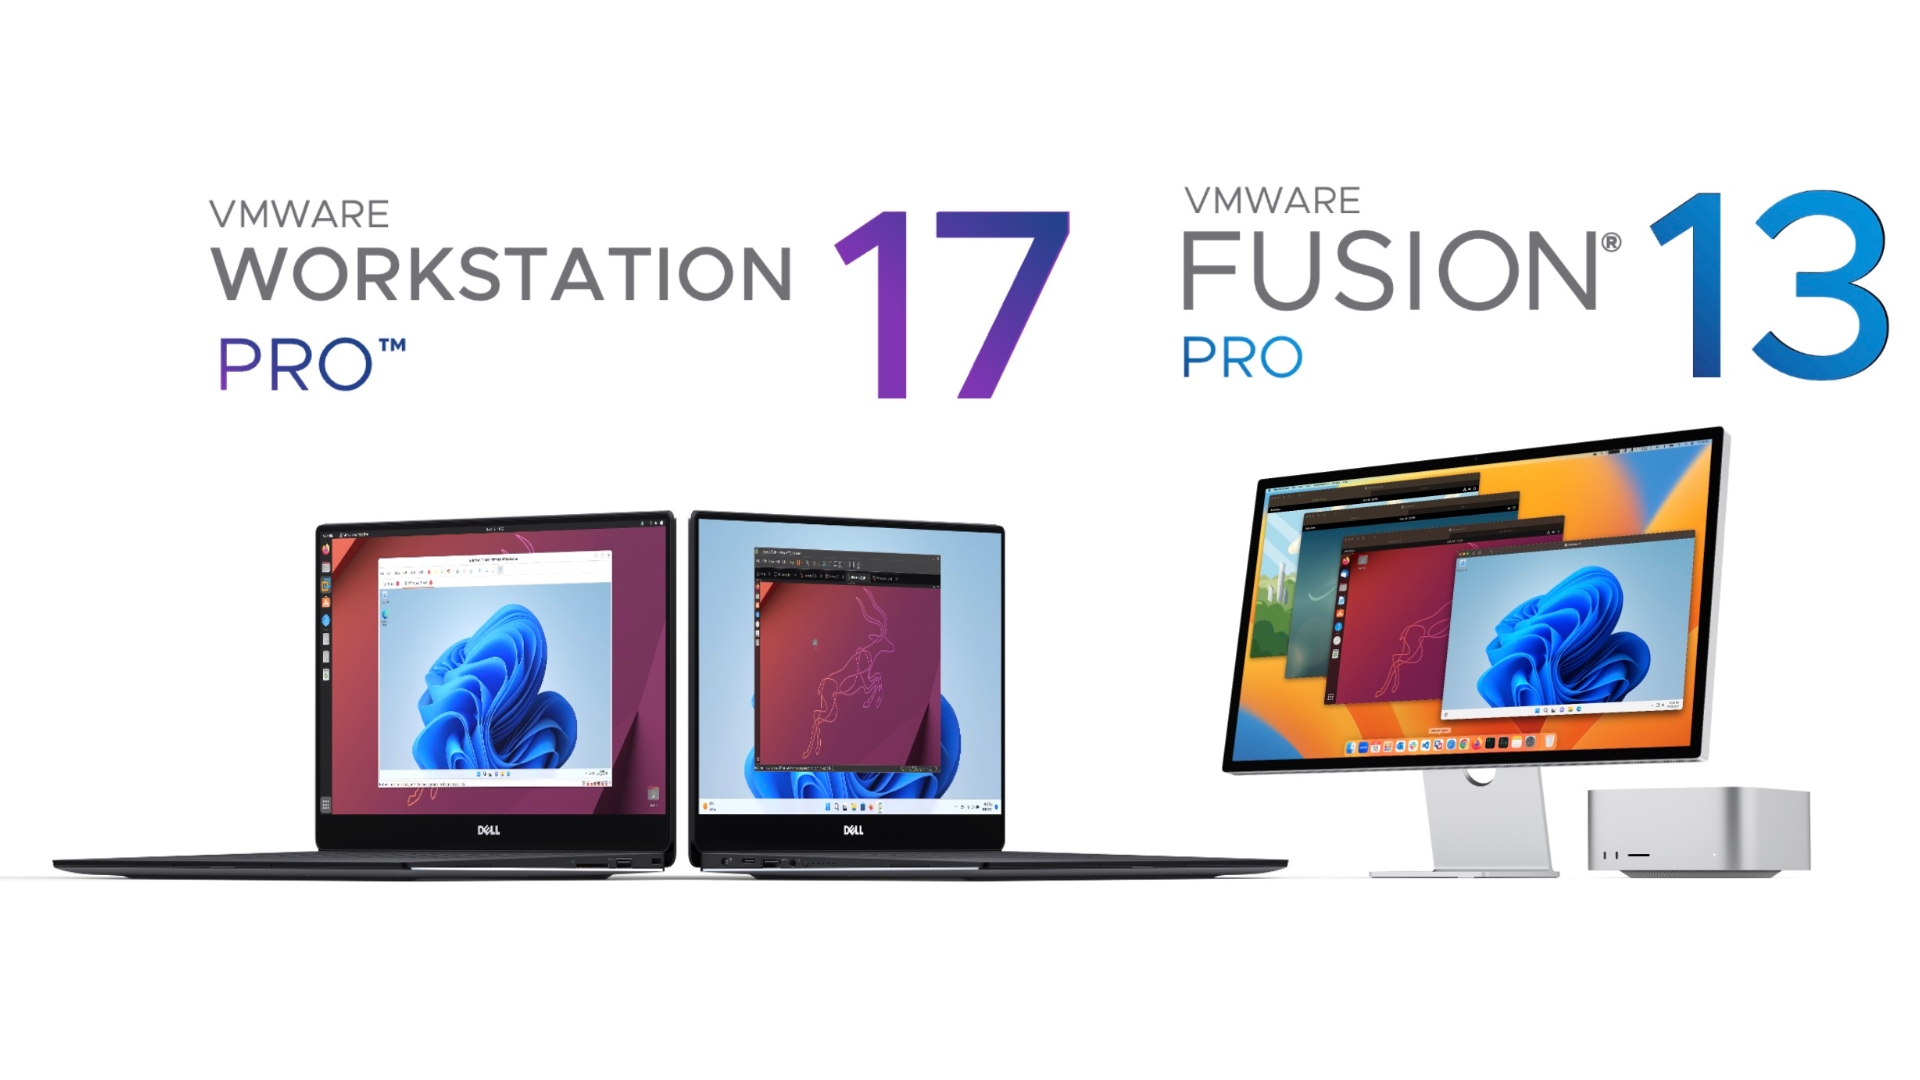 vmware fusion pro 13